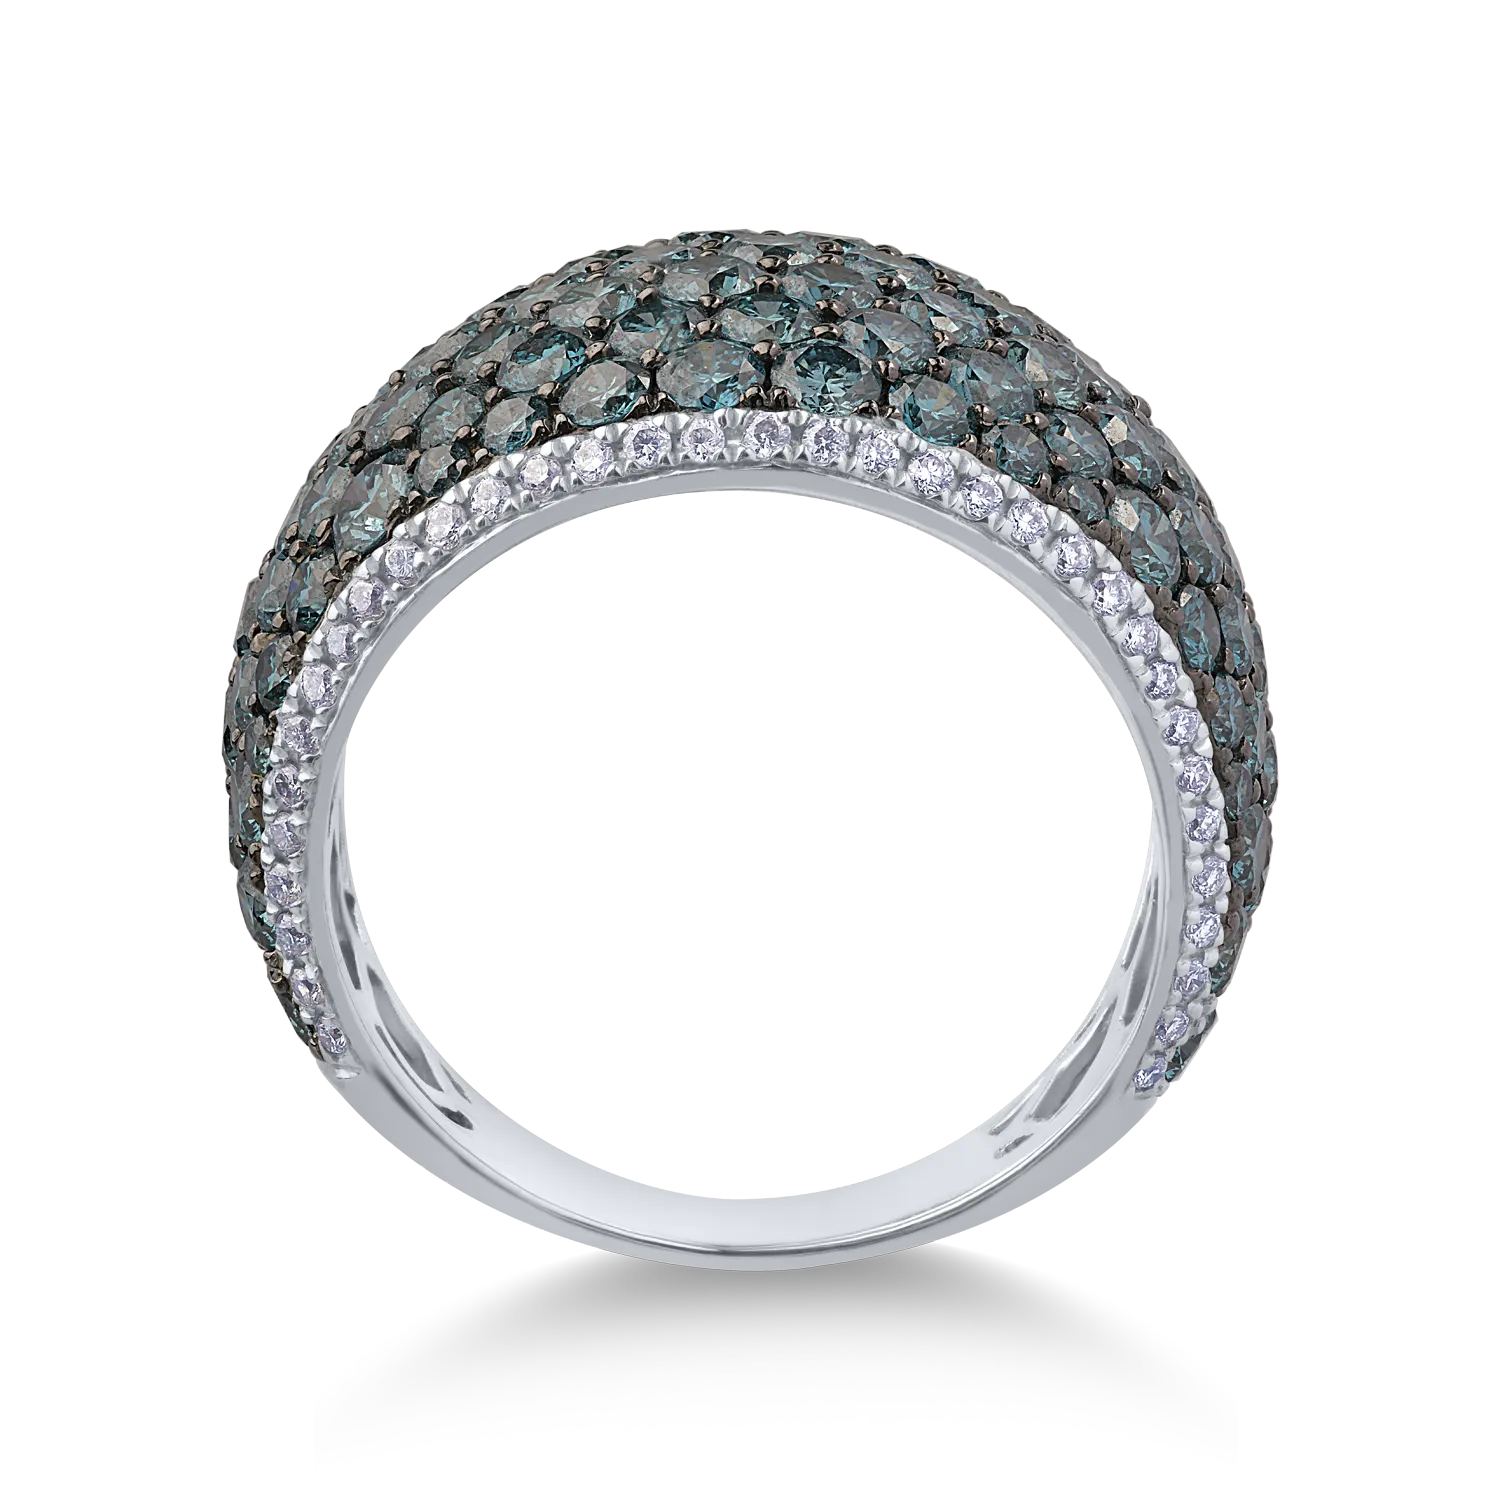 18K fehérarany gyűrű 4.05ct kék gyémántokkal és 0.26ct tiszta gyémántokkal